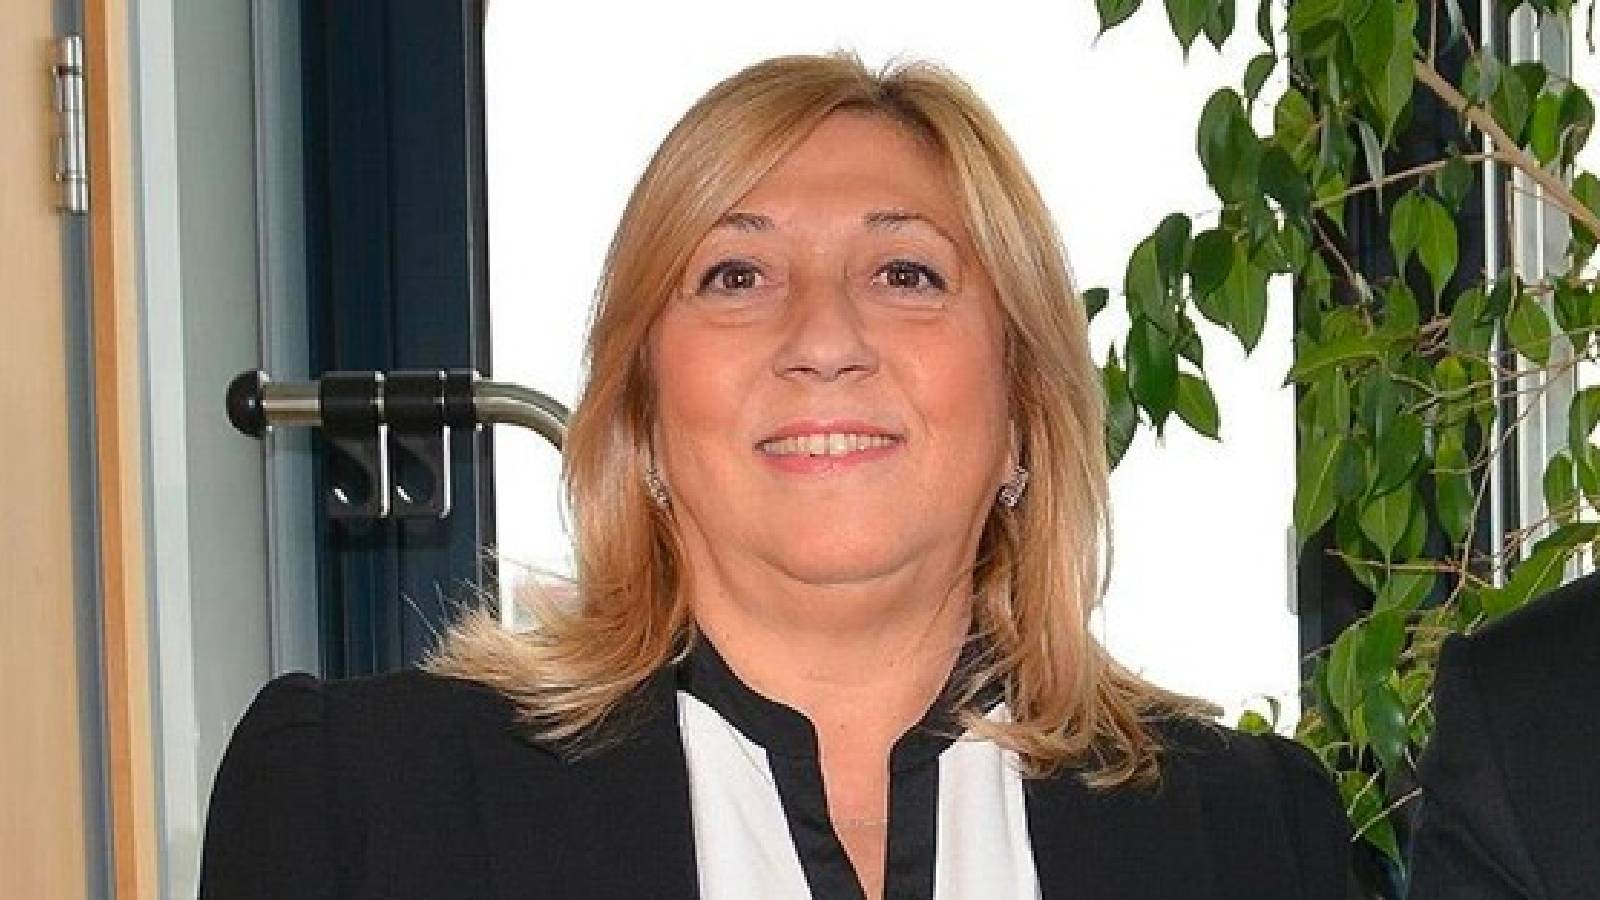 AİHM'in ilk Türk kadın yargıcı Prof. Dr. Ayşe Işıl Karakaş hayatını kaybetti